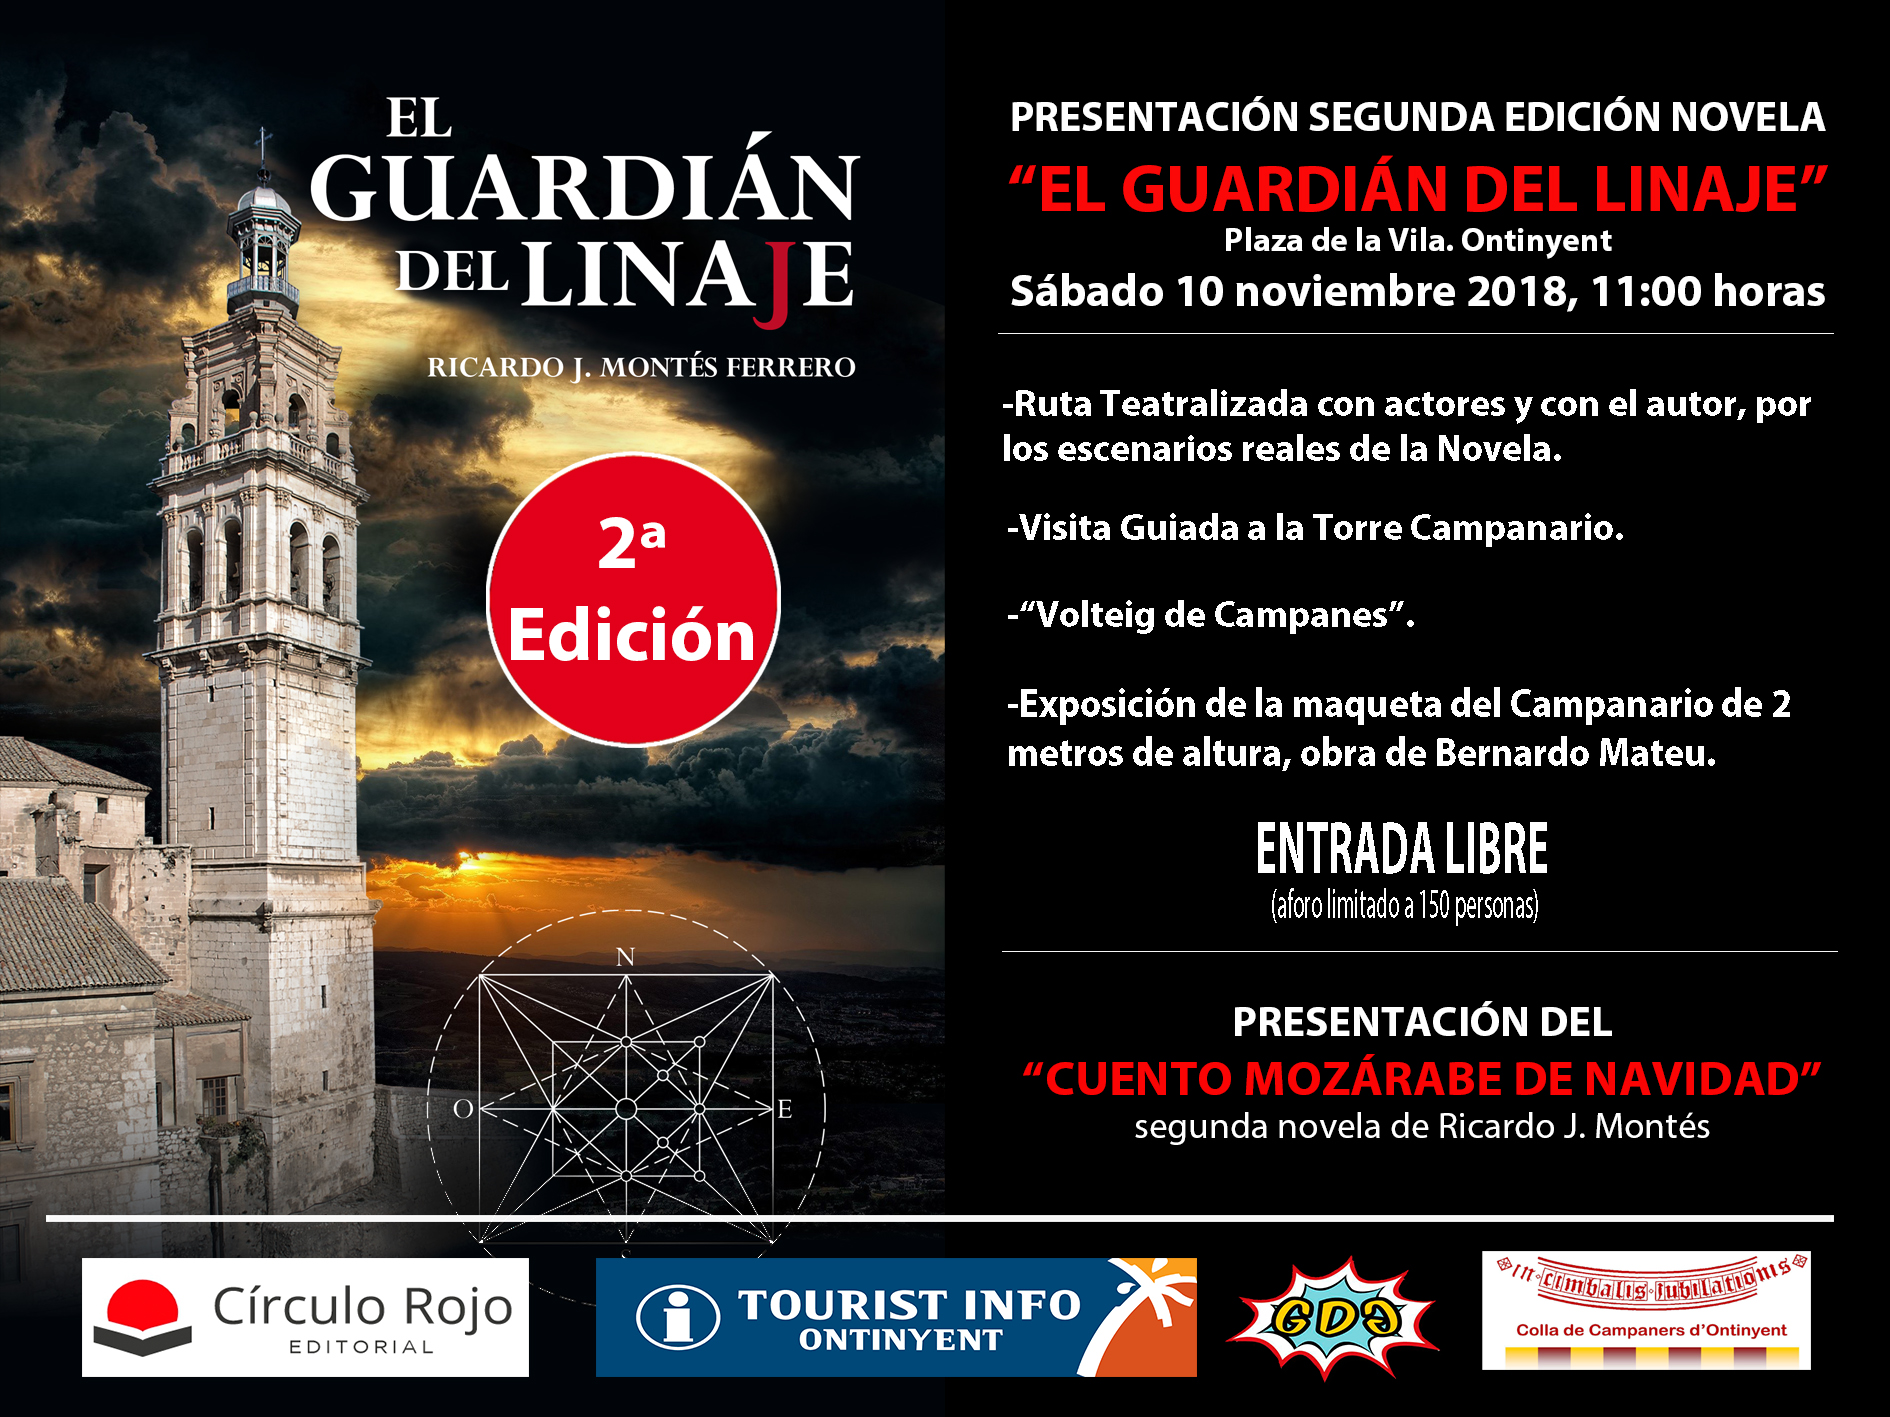 Cartel anunciador de la presentación de la Segunda Edición de la novela histórica "El Guardián del Linaje".